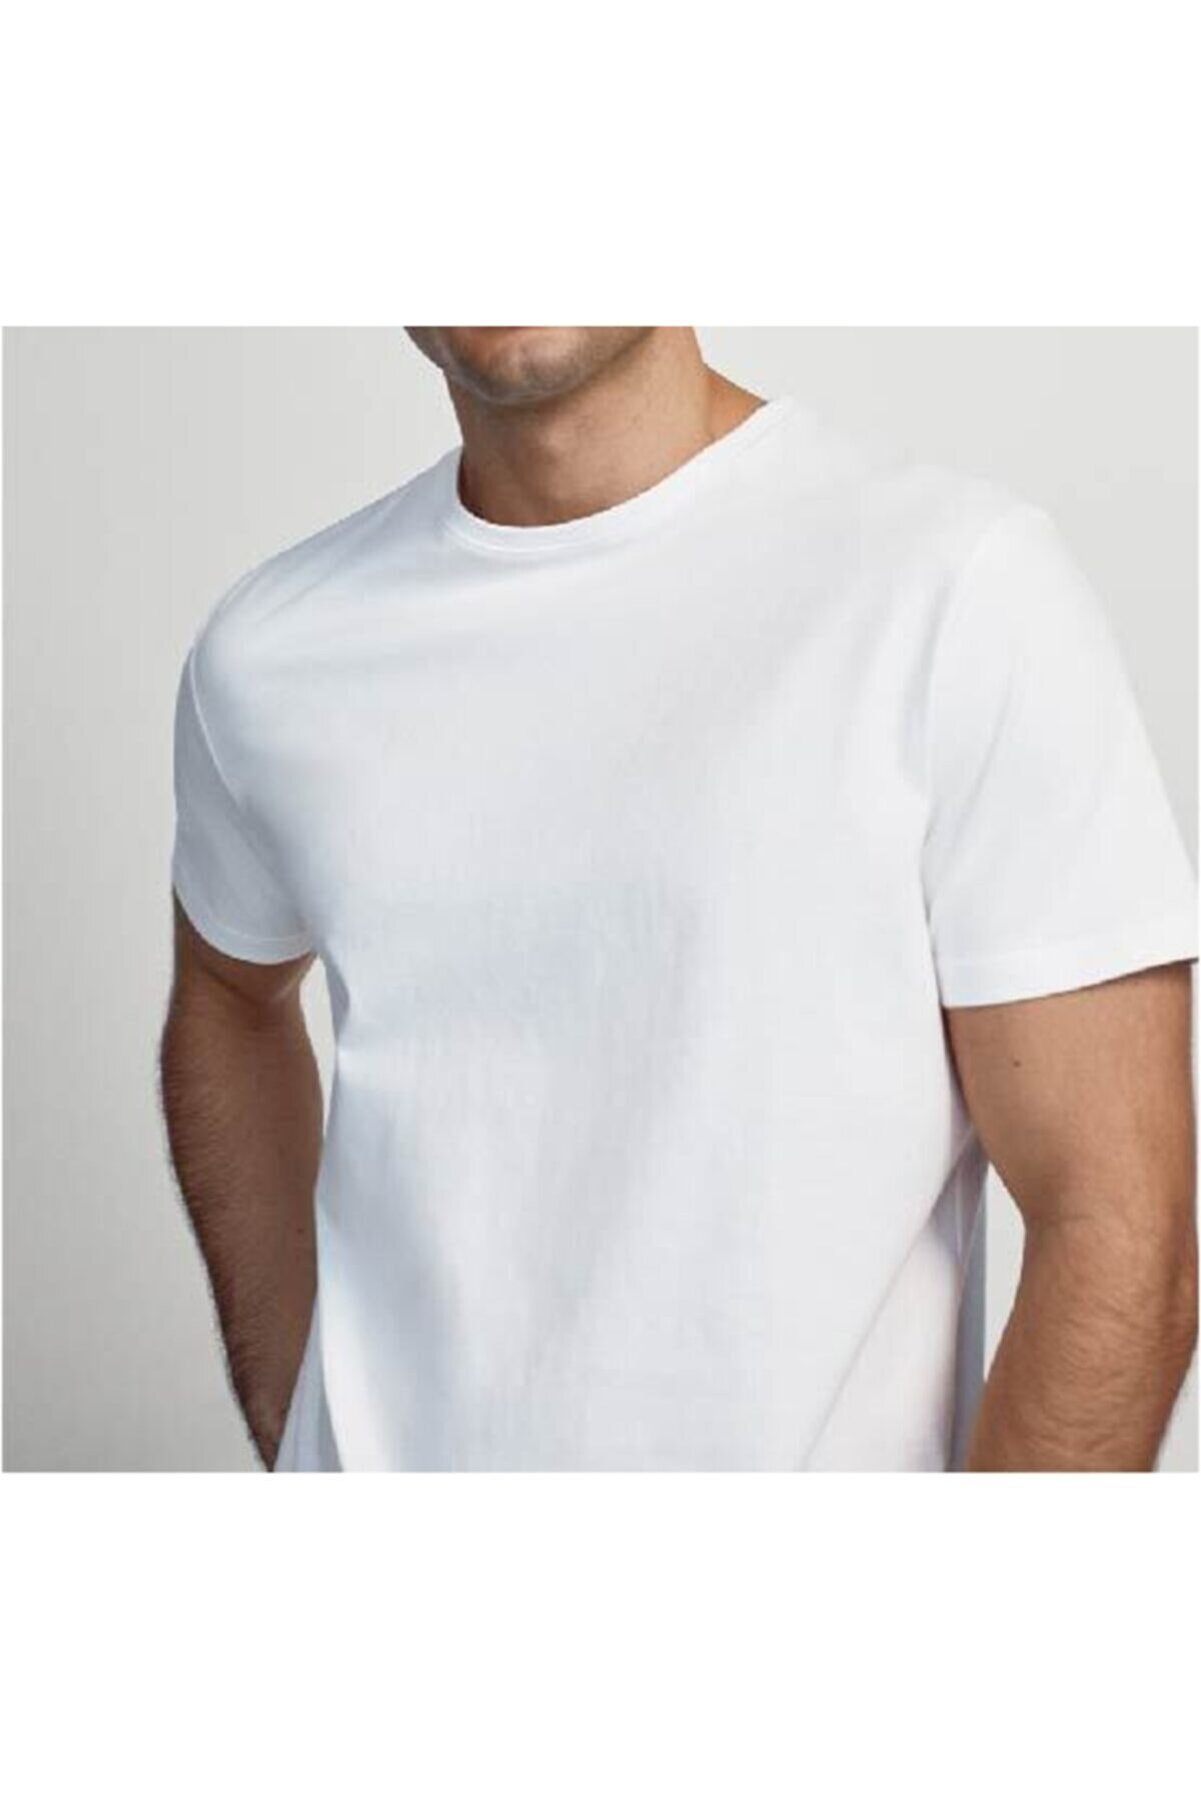 ROS Erkek Beyaz Basic Pamuklu Kısa Kollu Bisiklet Yaka Casual Fit T-shirt